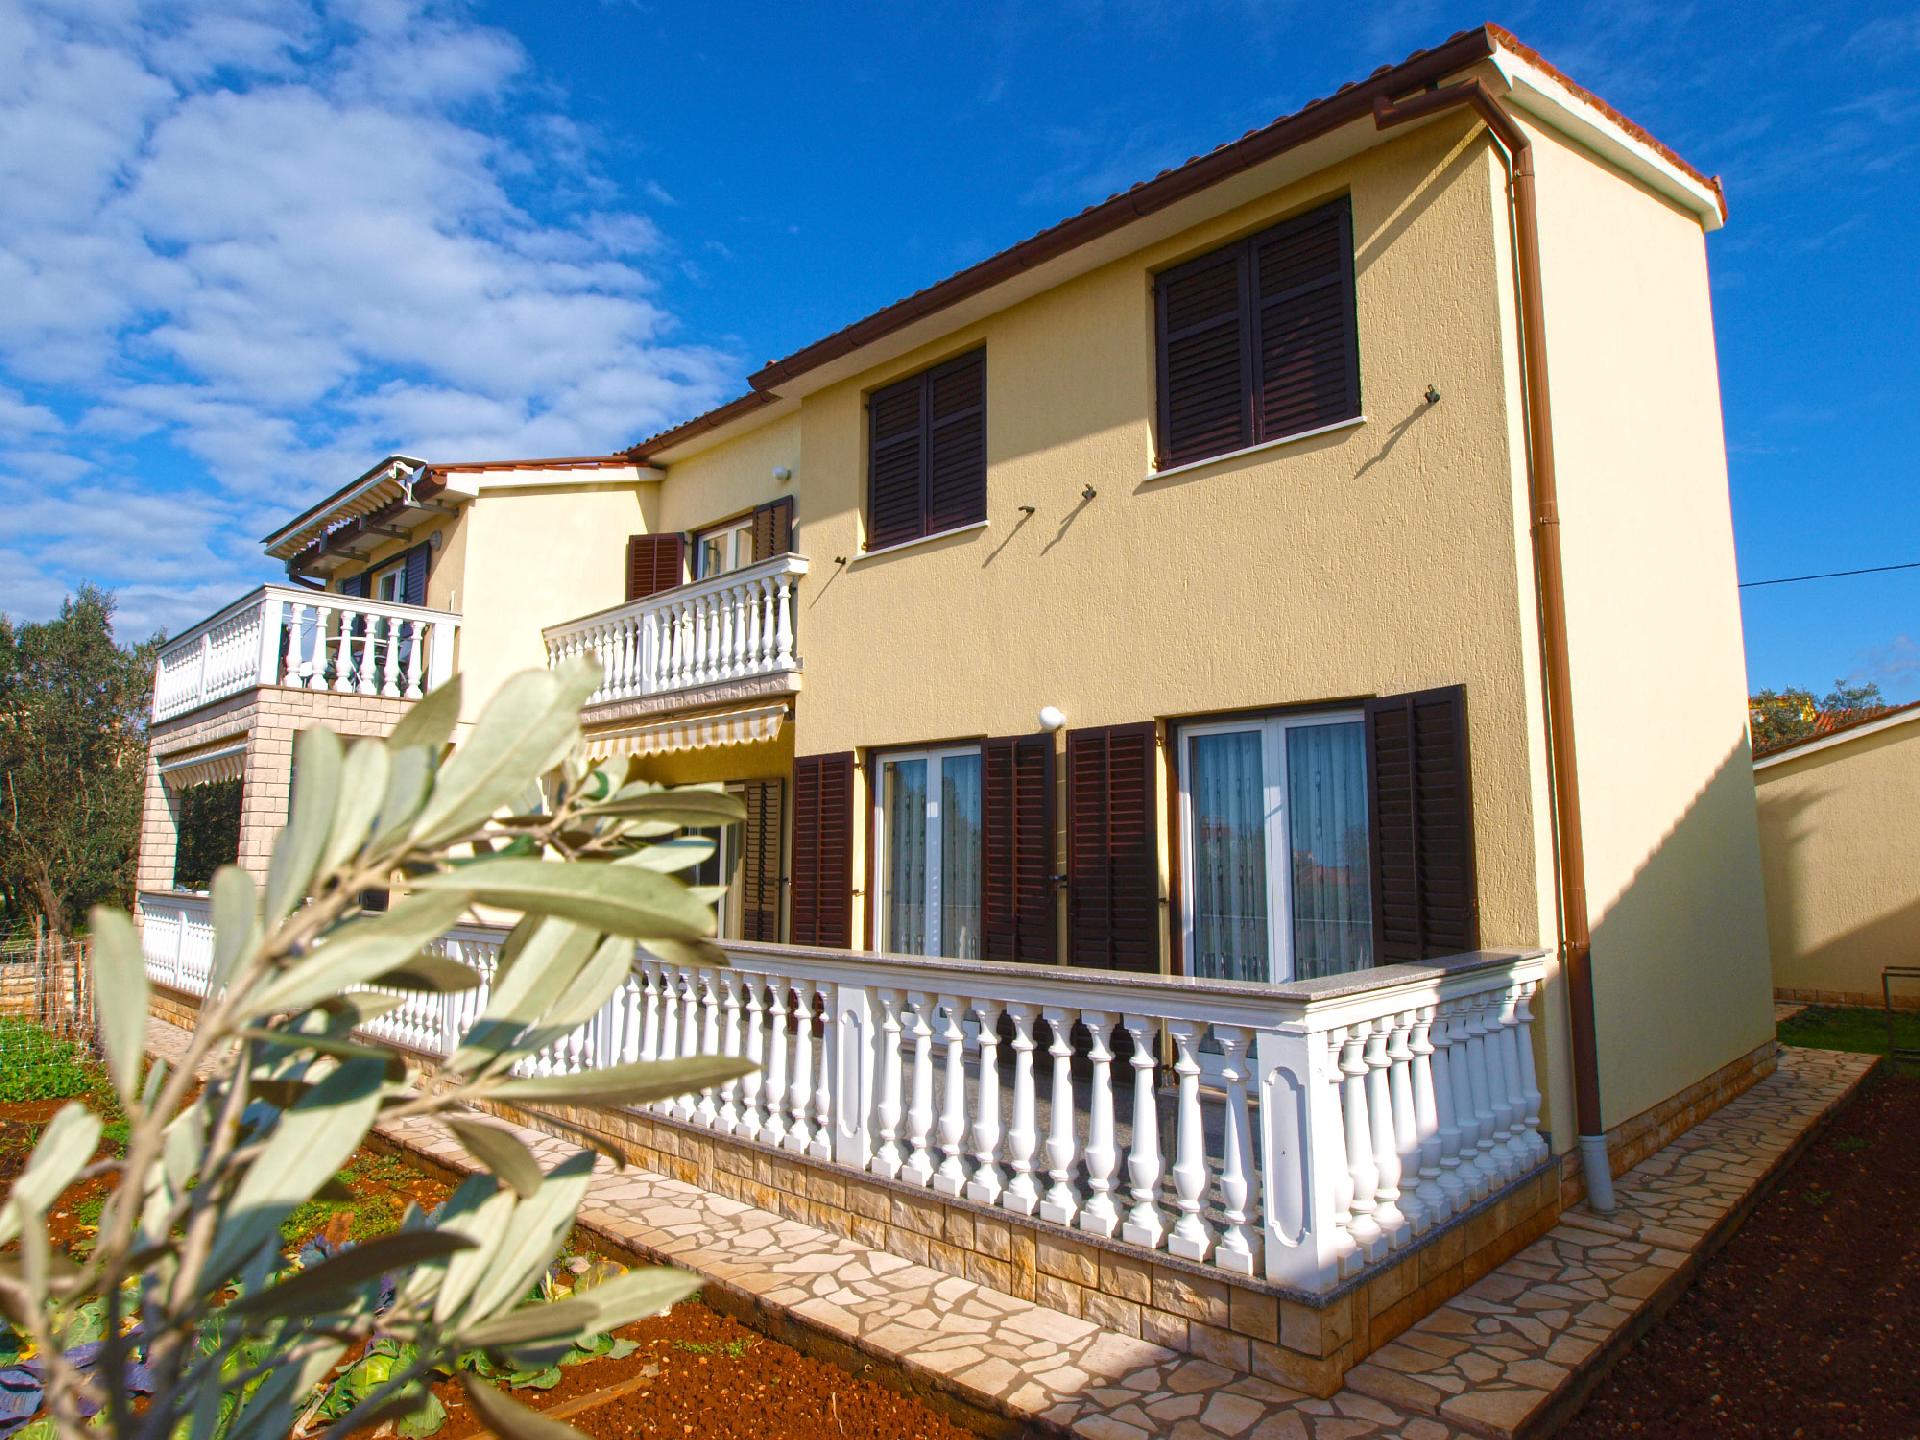 Ferienwohnung für 4 Personen ca. 42 m² i  in Istrien